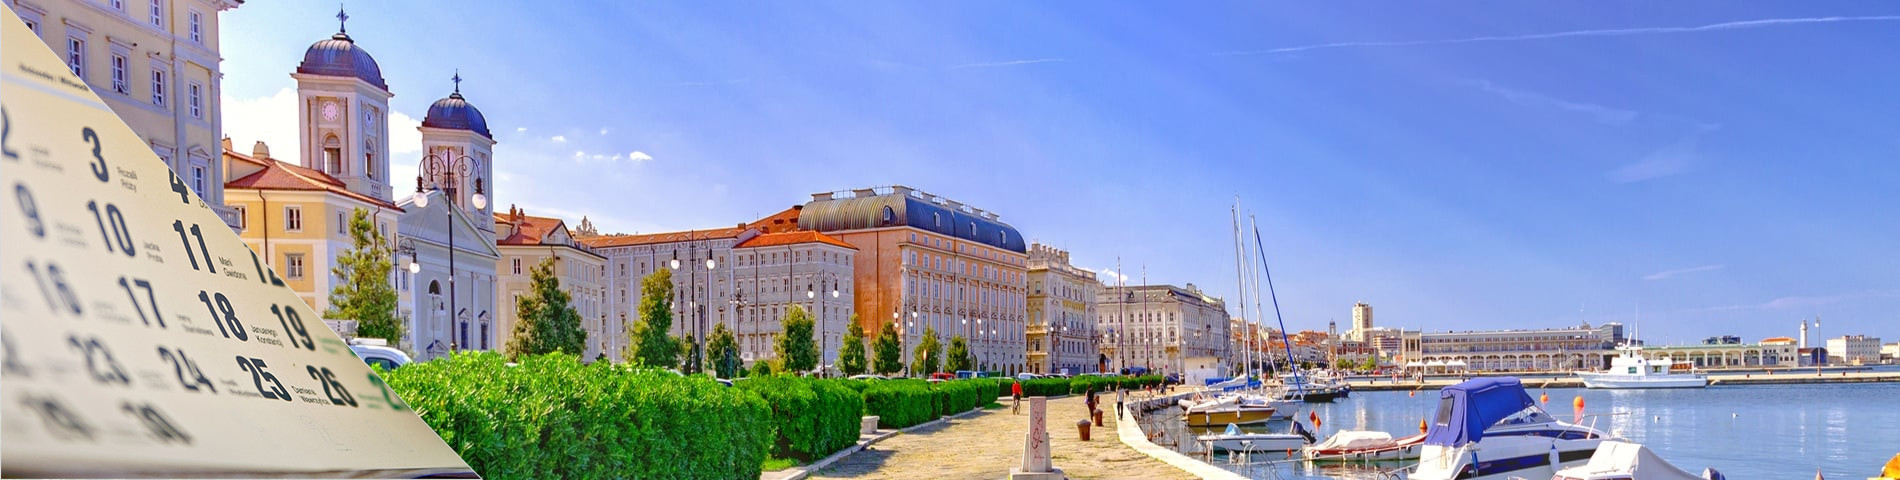 Trieste - Dlouhodobý kurz (6-12 měsíců)